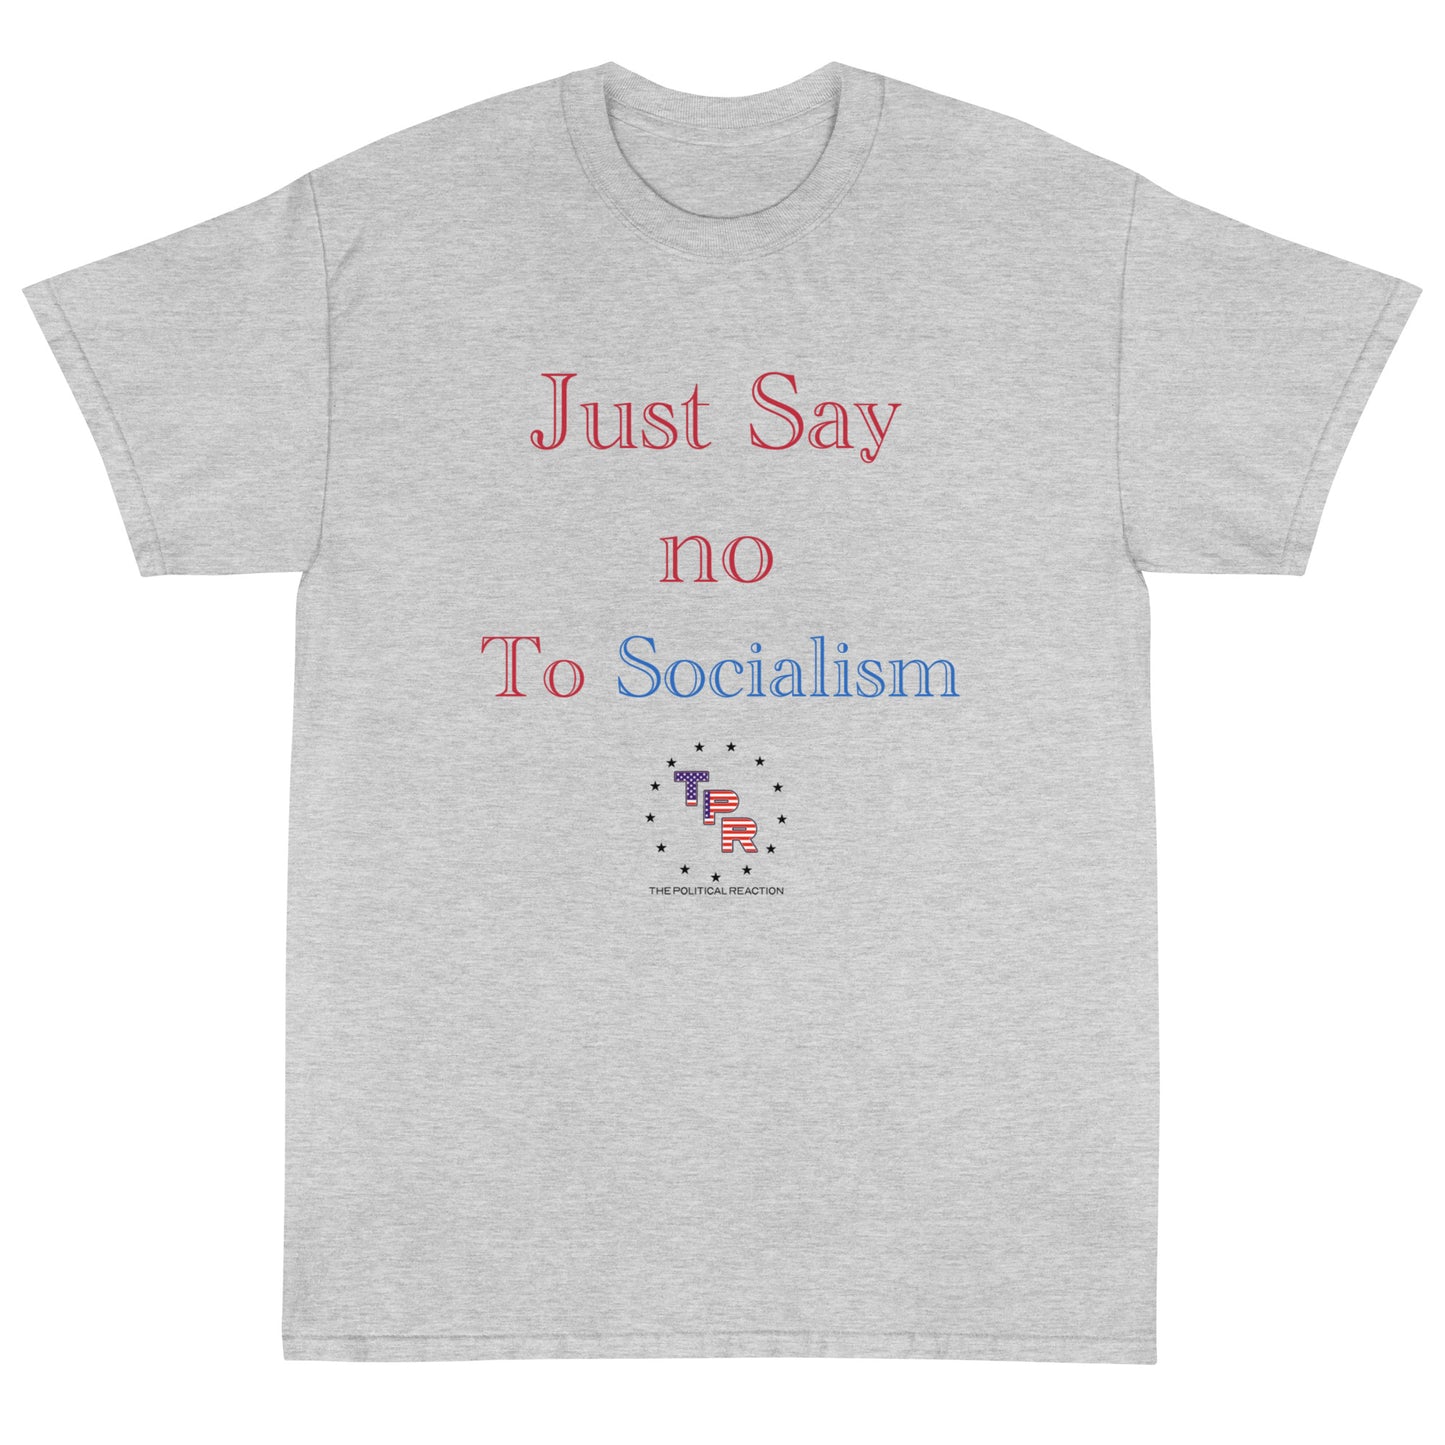 Just-say-no-to-socialism-t-shirt-Grey